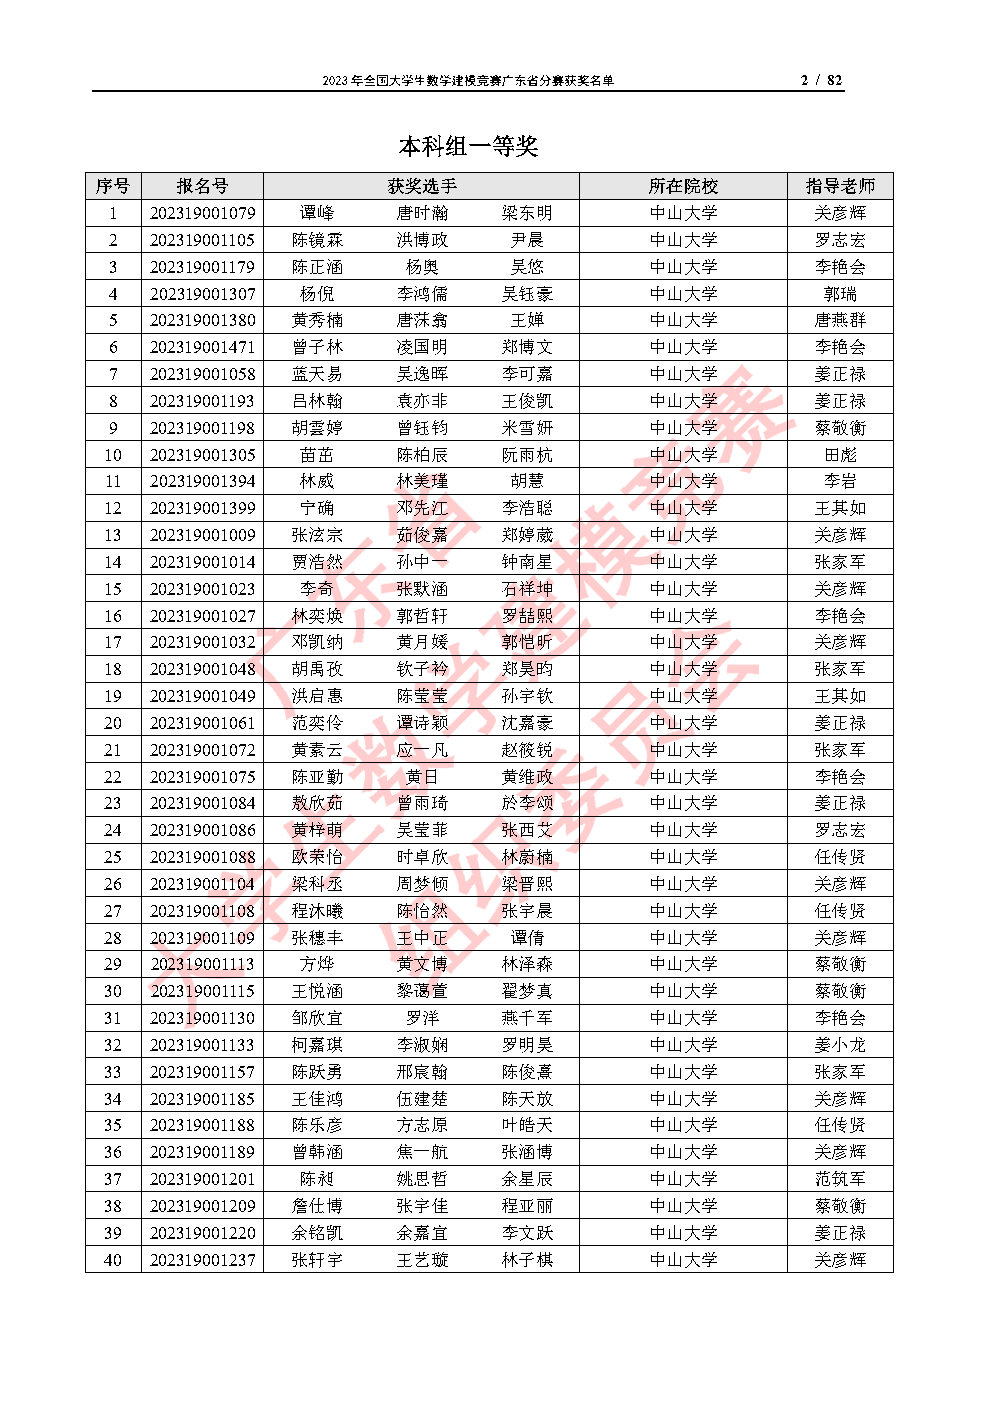 2023年全国大学生数学建模竞赛广东省分赛获奖名单_Page2.jpg